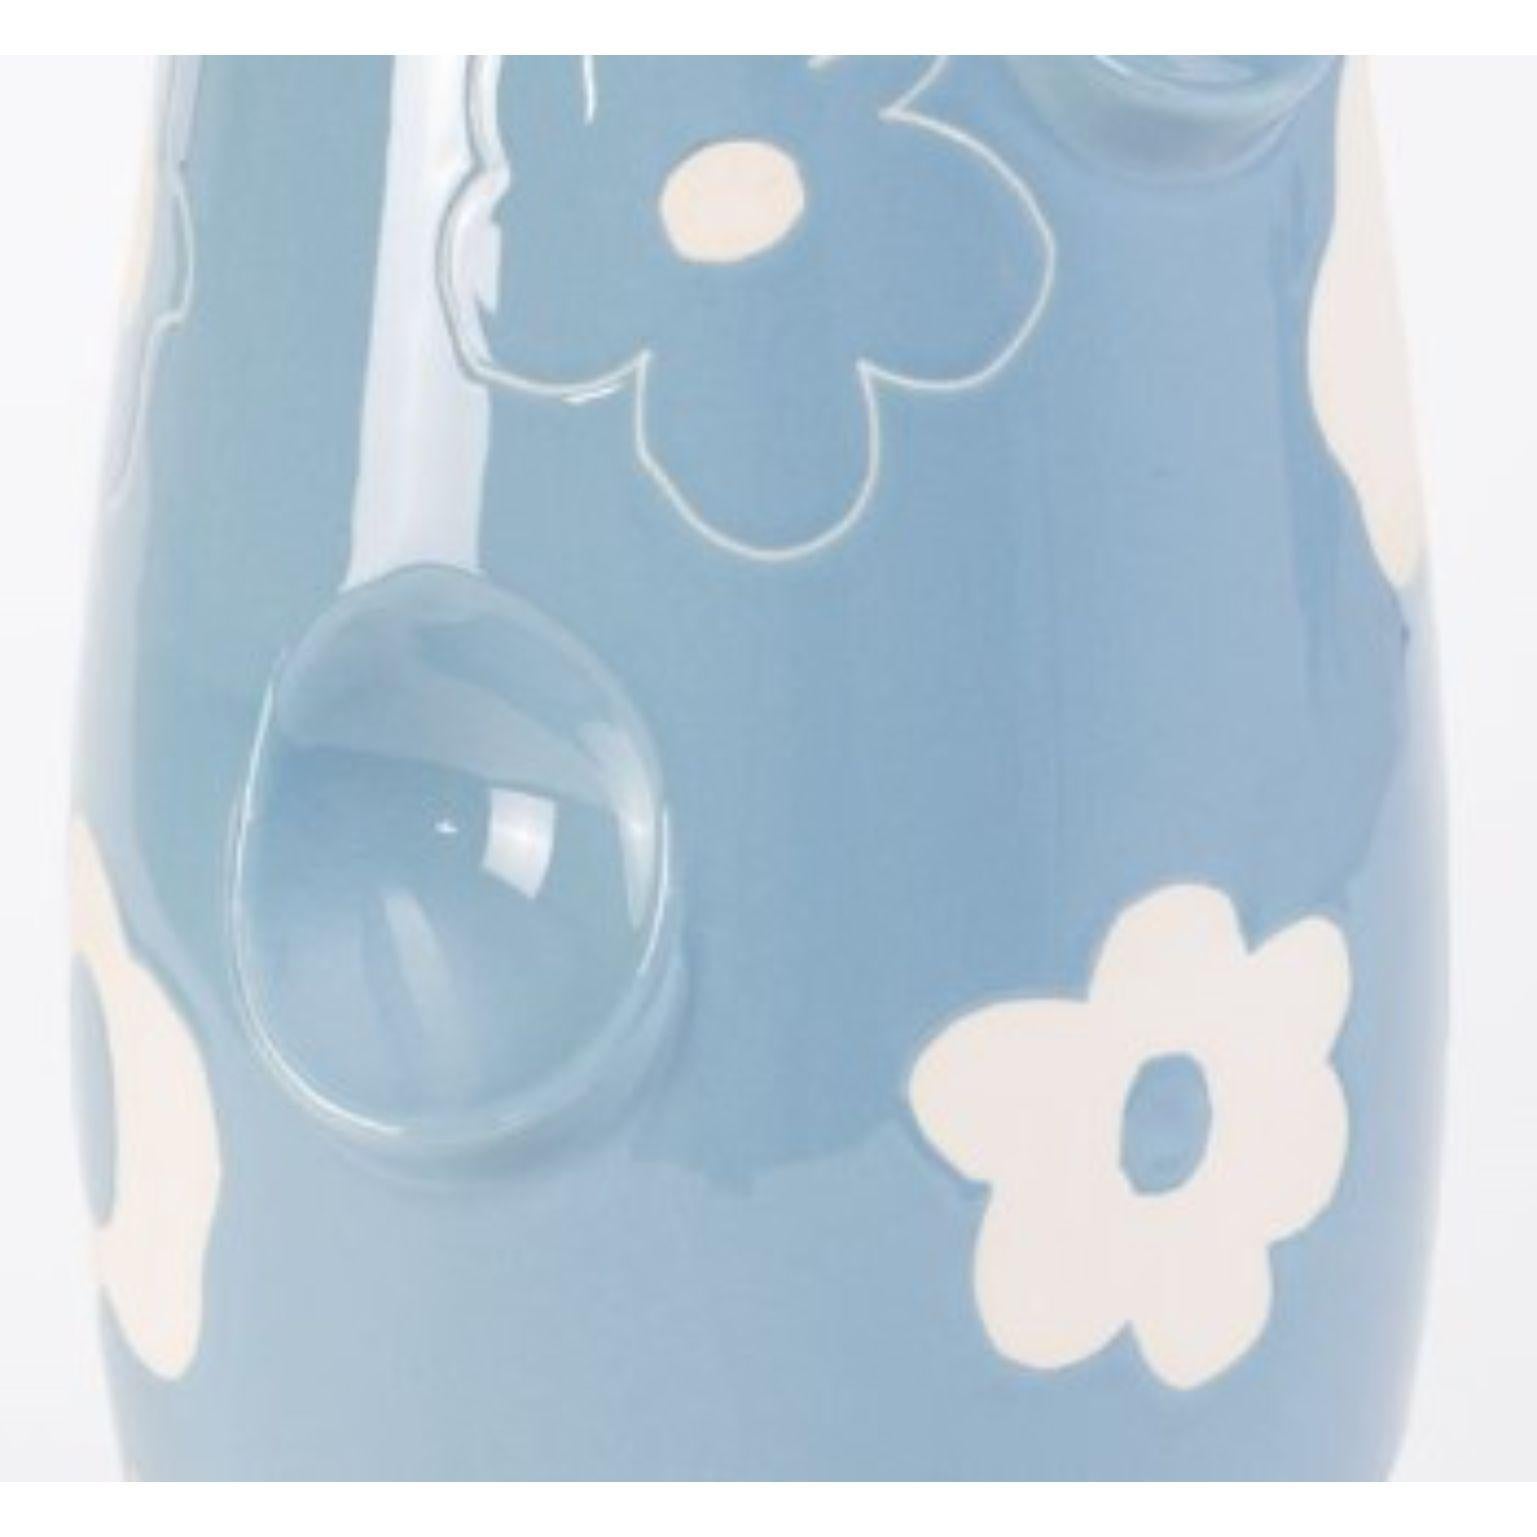 Contemporary Oko Pop Ceramic Vase, Denim Daisy by Malwina Konopacka